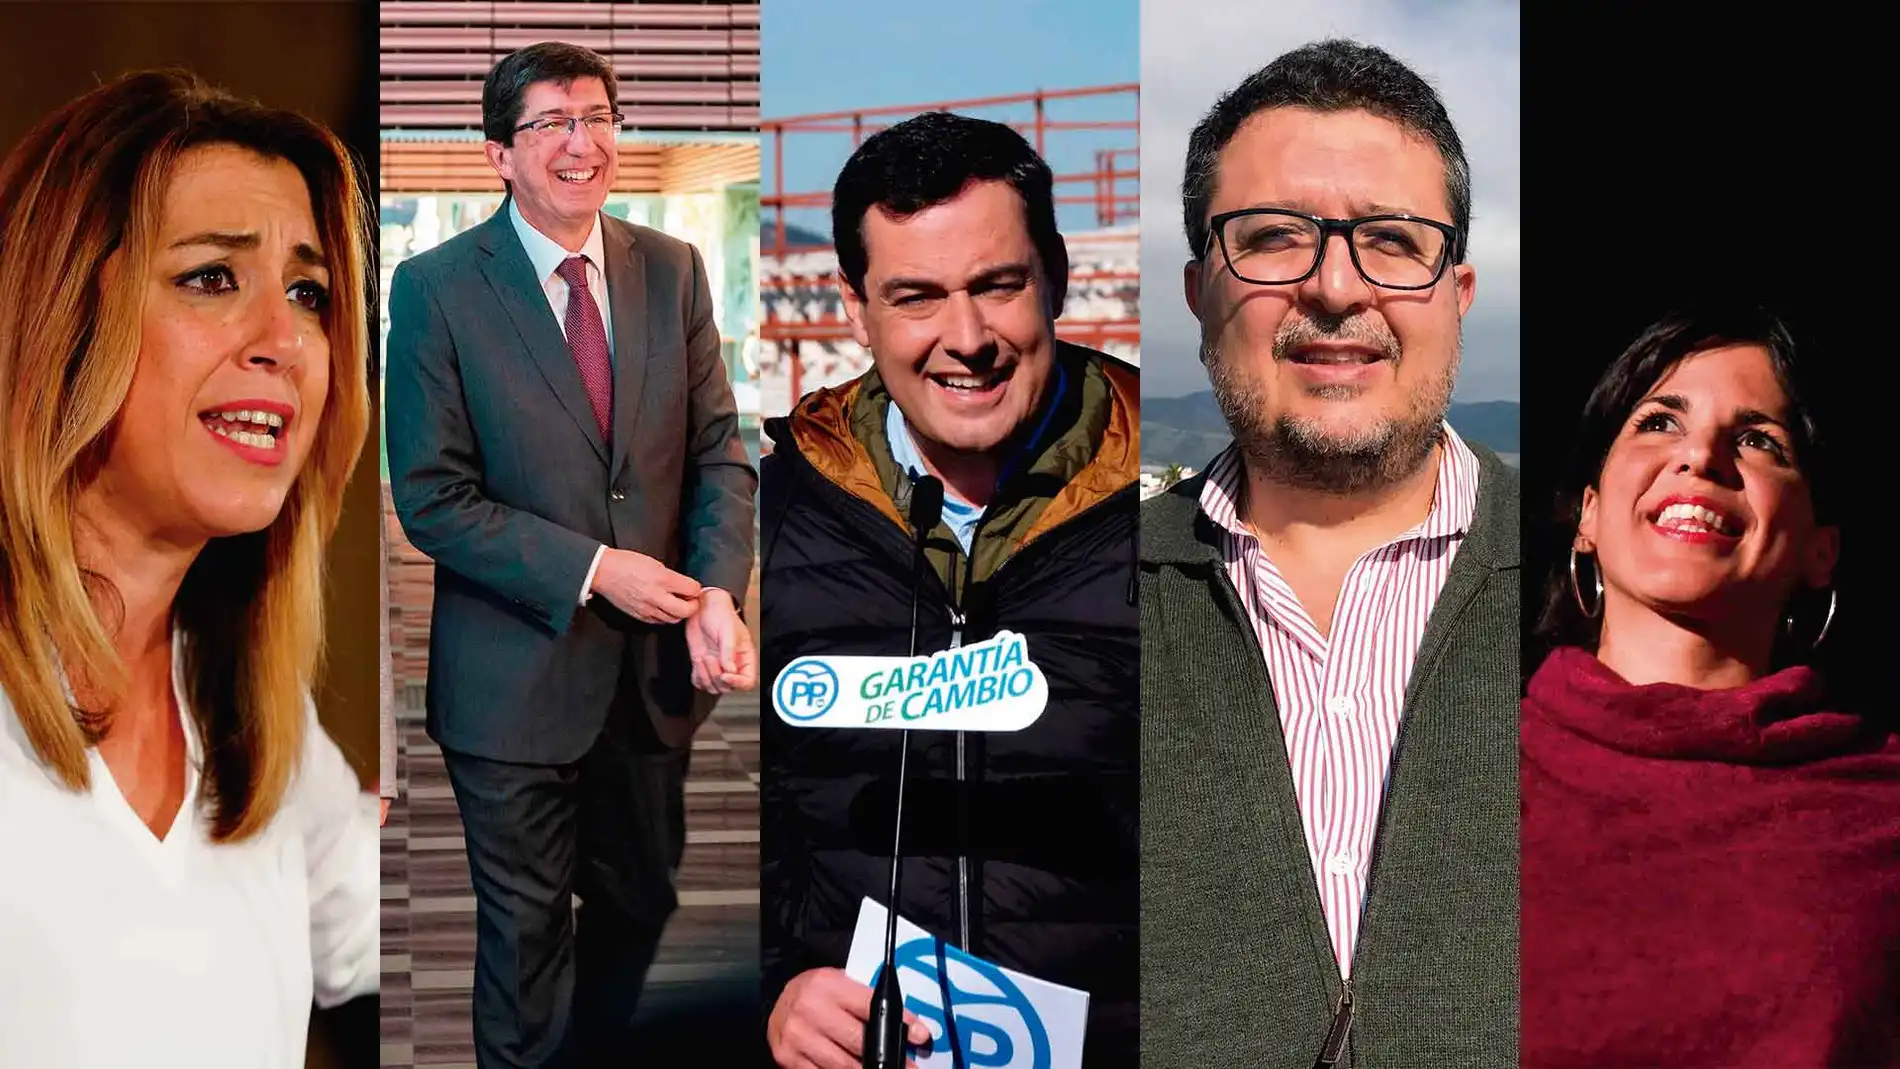 Susana Díaz, Juan Marín, Juan Manuel Moreno, Francisco Serrano y Teresa Rodríguez son los candidatos a presidir la próxima Junta de Andalucía